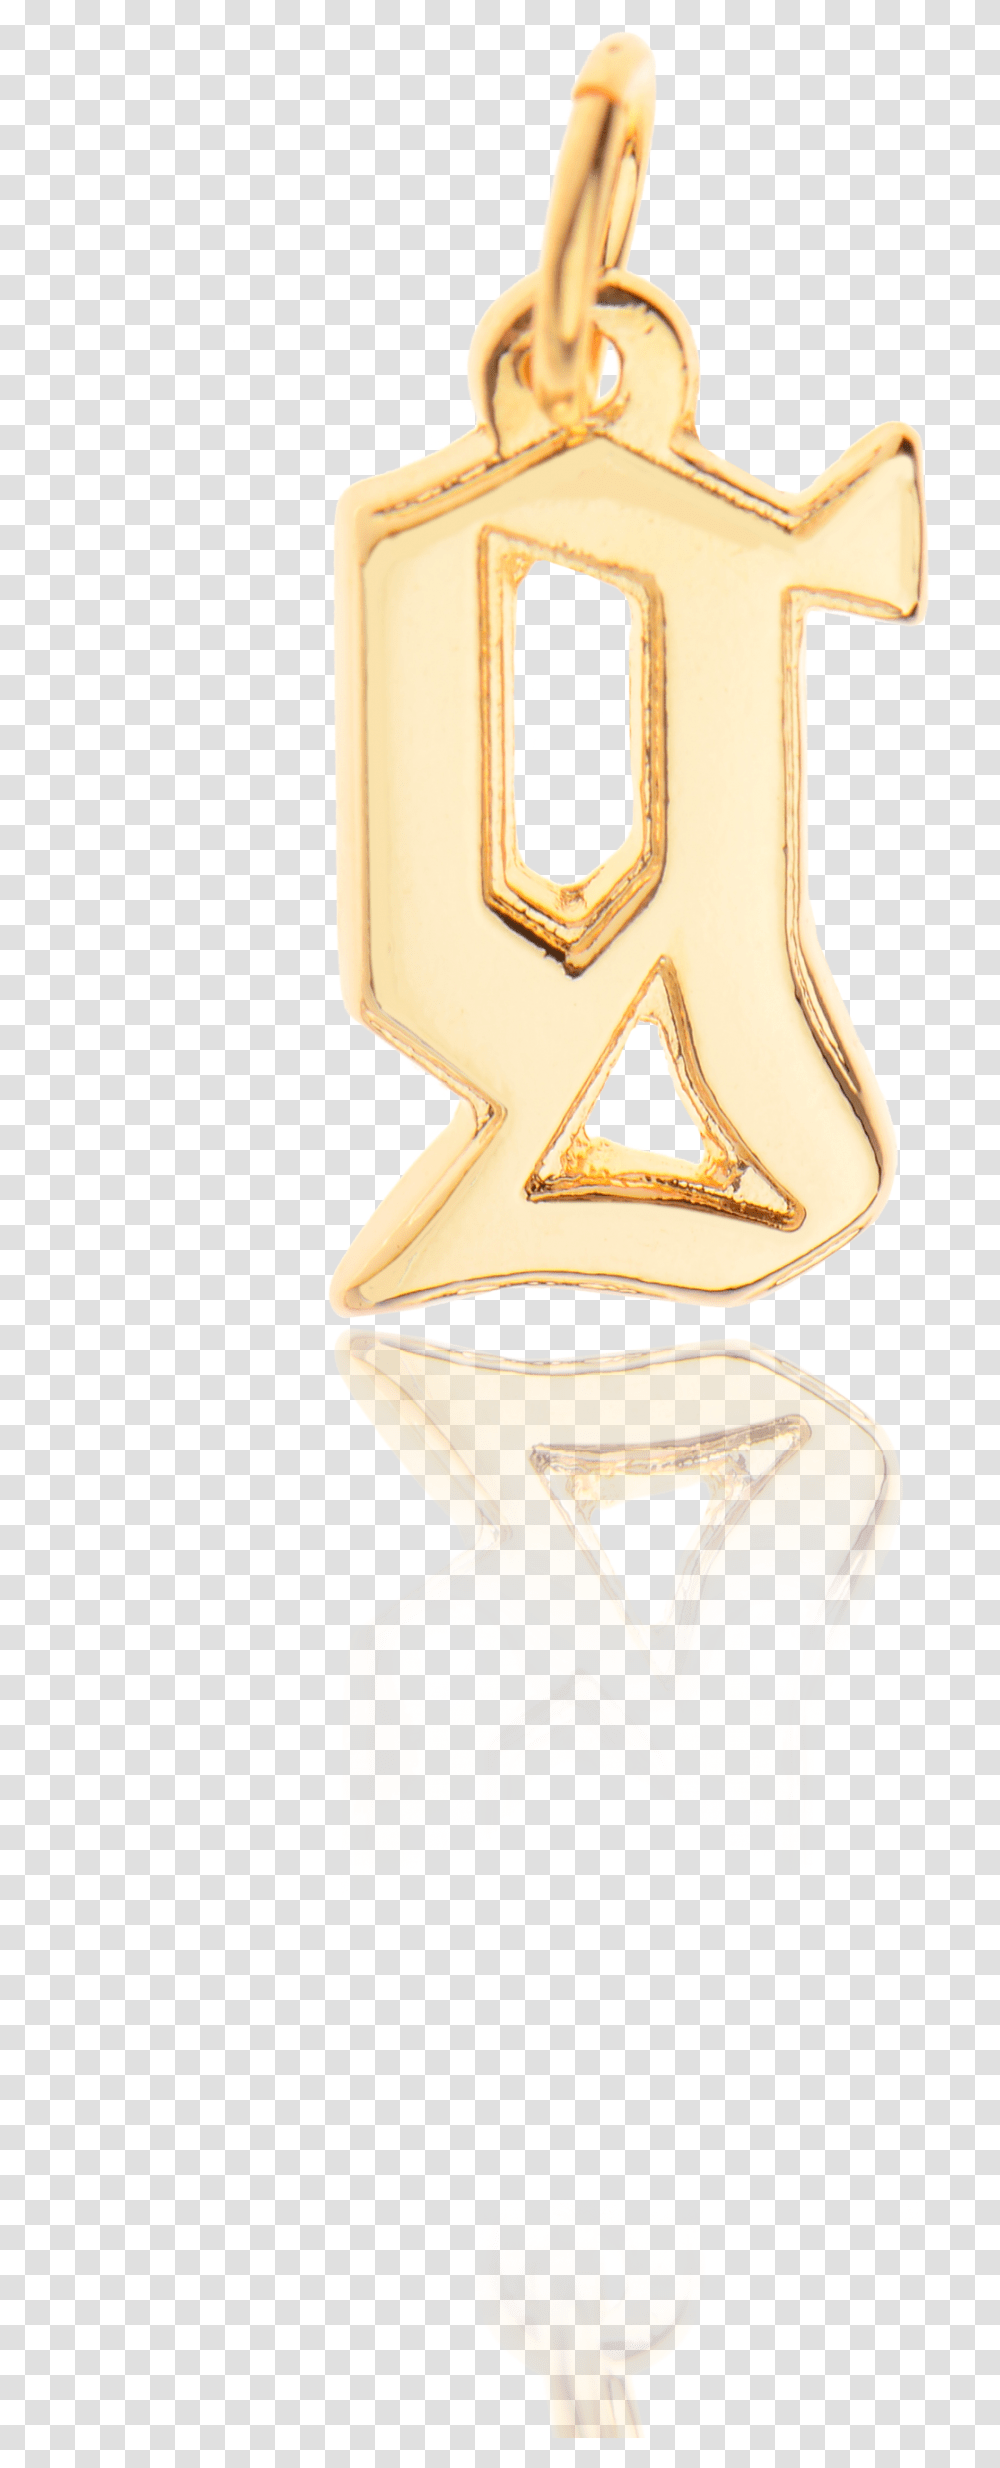 Corrente De Ouro Emblem, Alphabet, Number Transparent Png